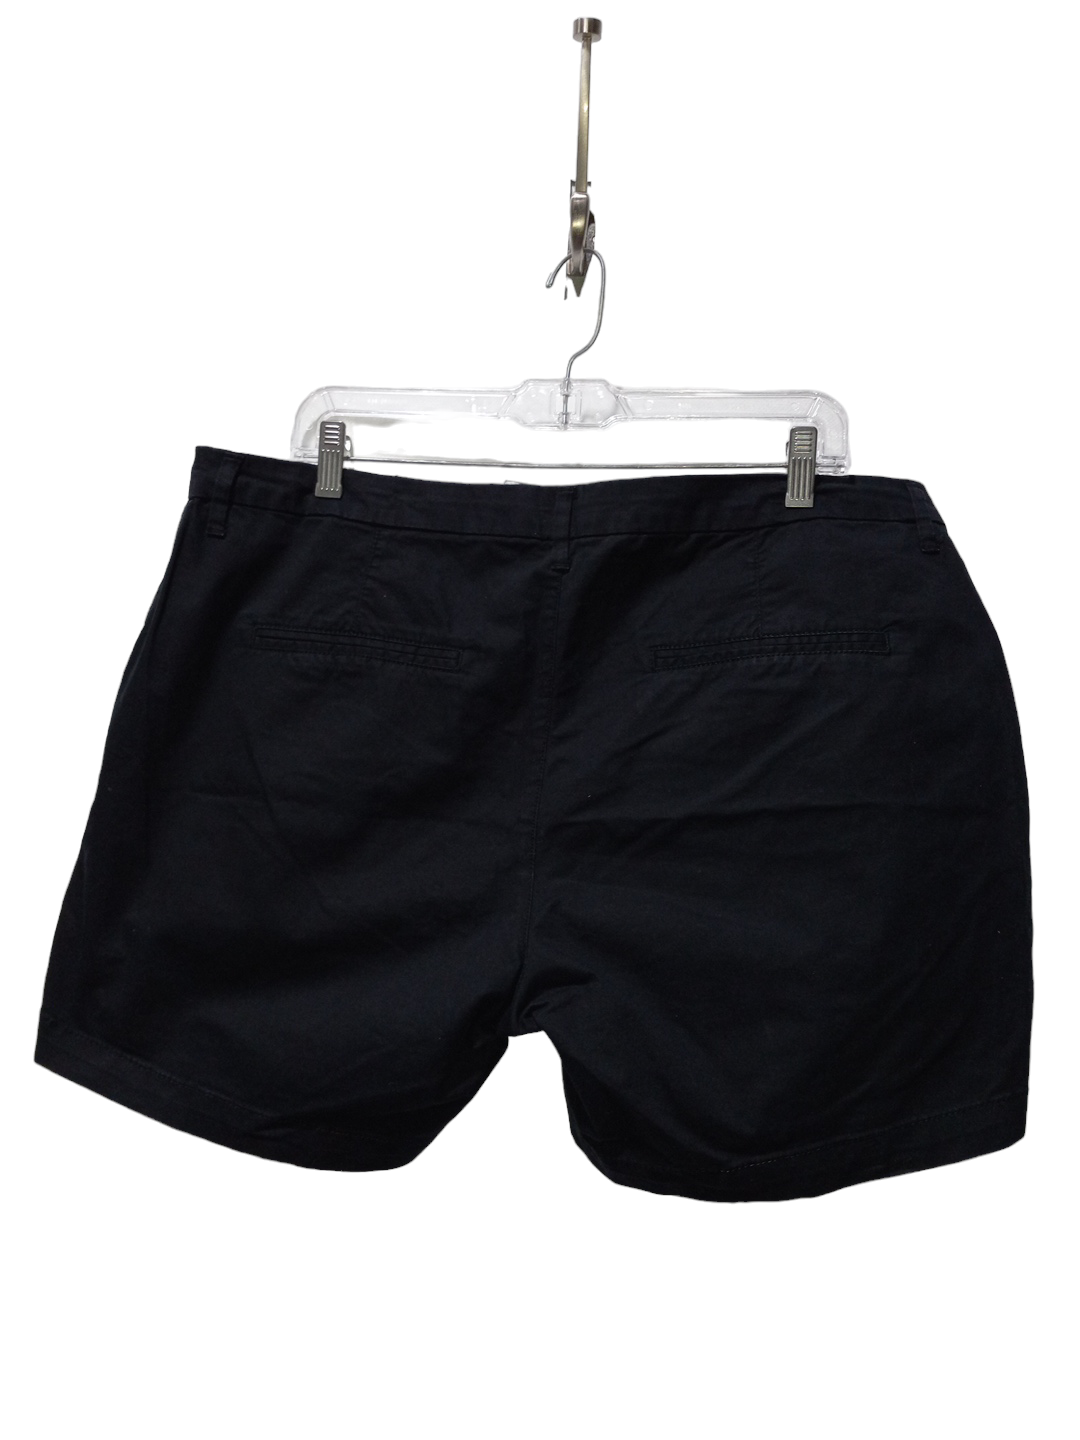 Black Shorts Old Navy, Size L